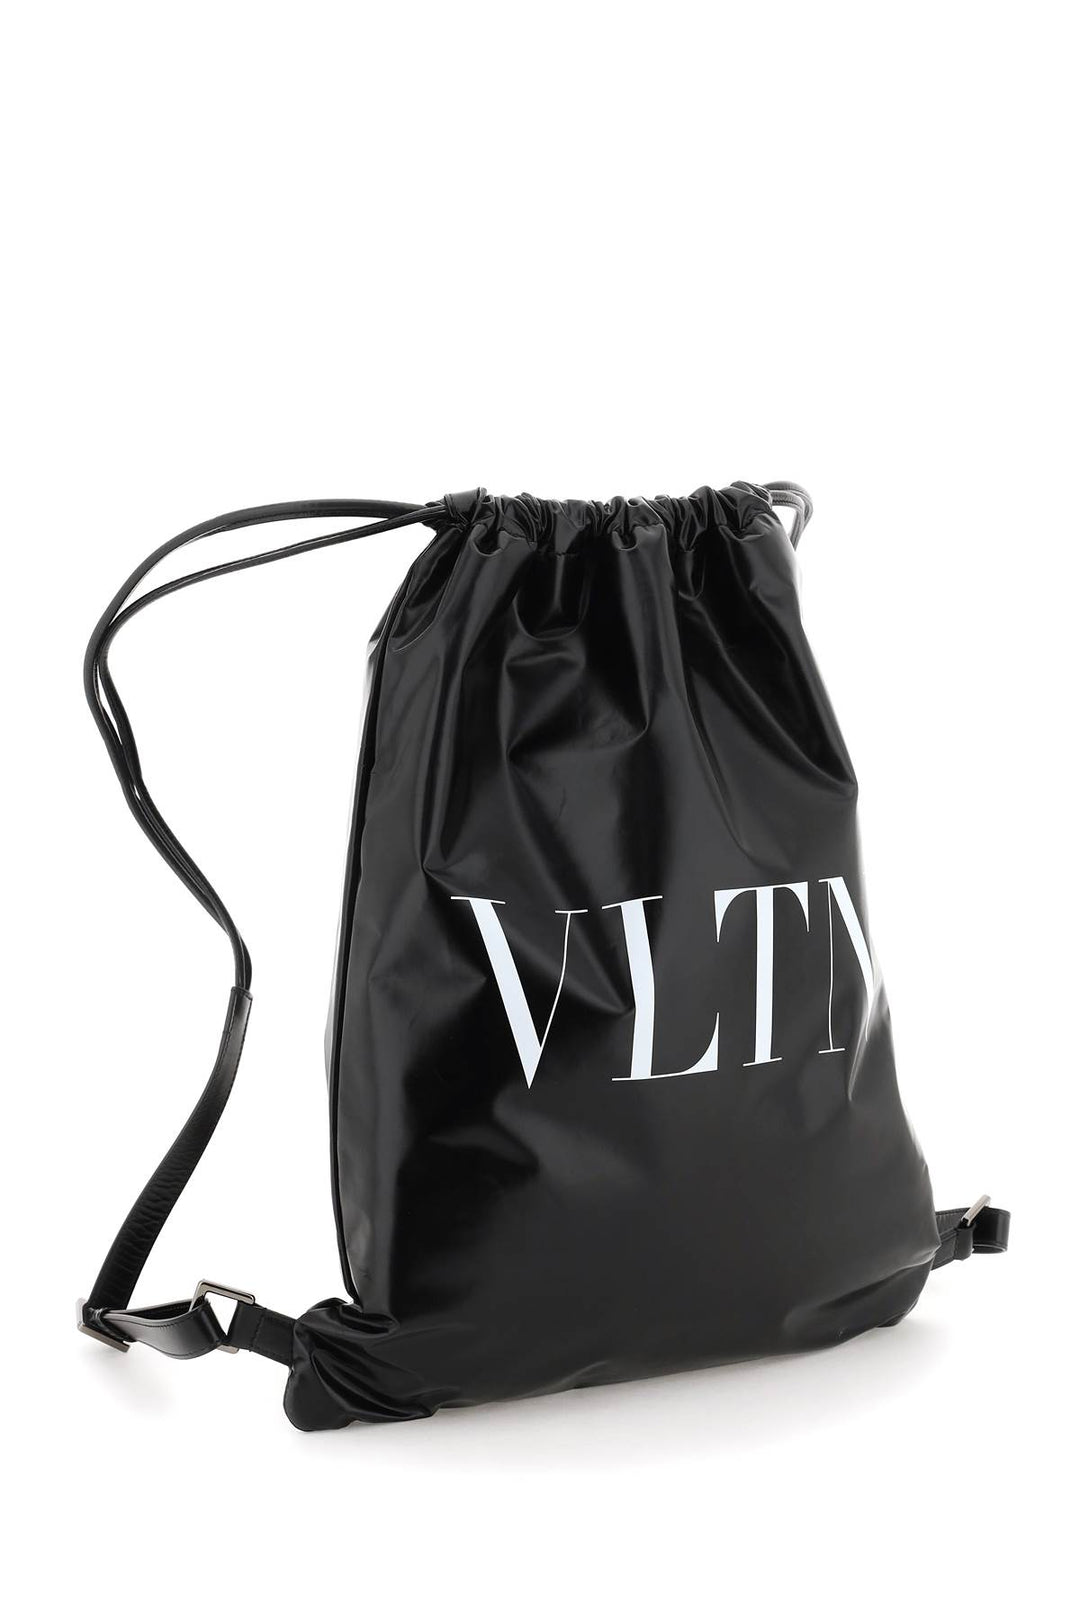 Valentino Garavani Vltn Soft Backpack   Nero